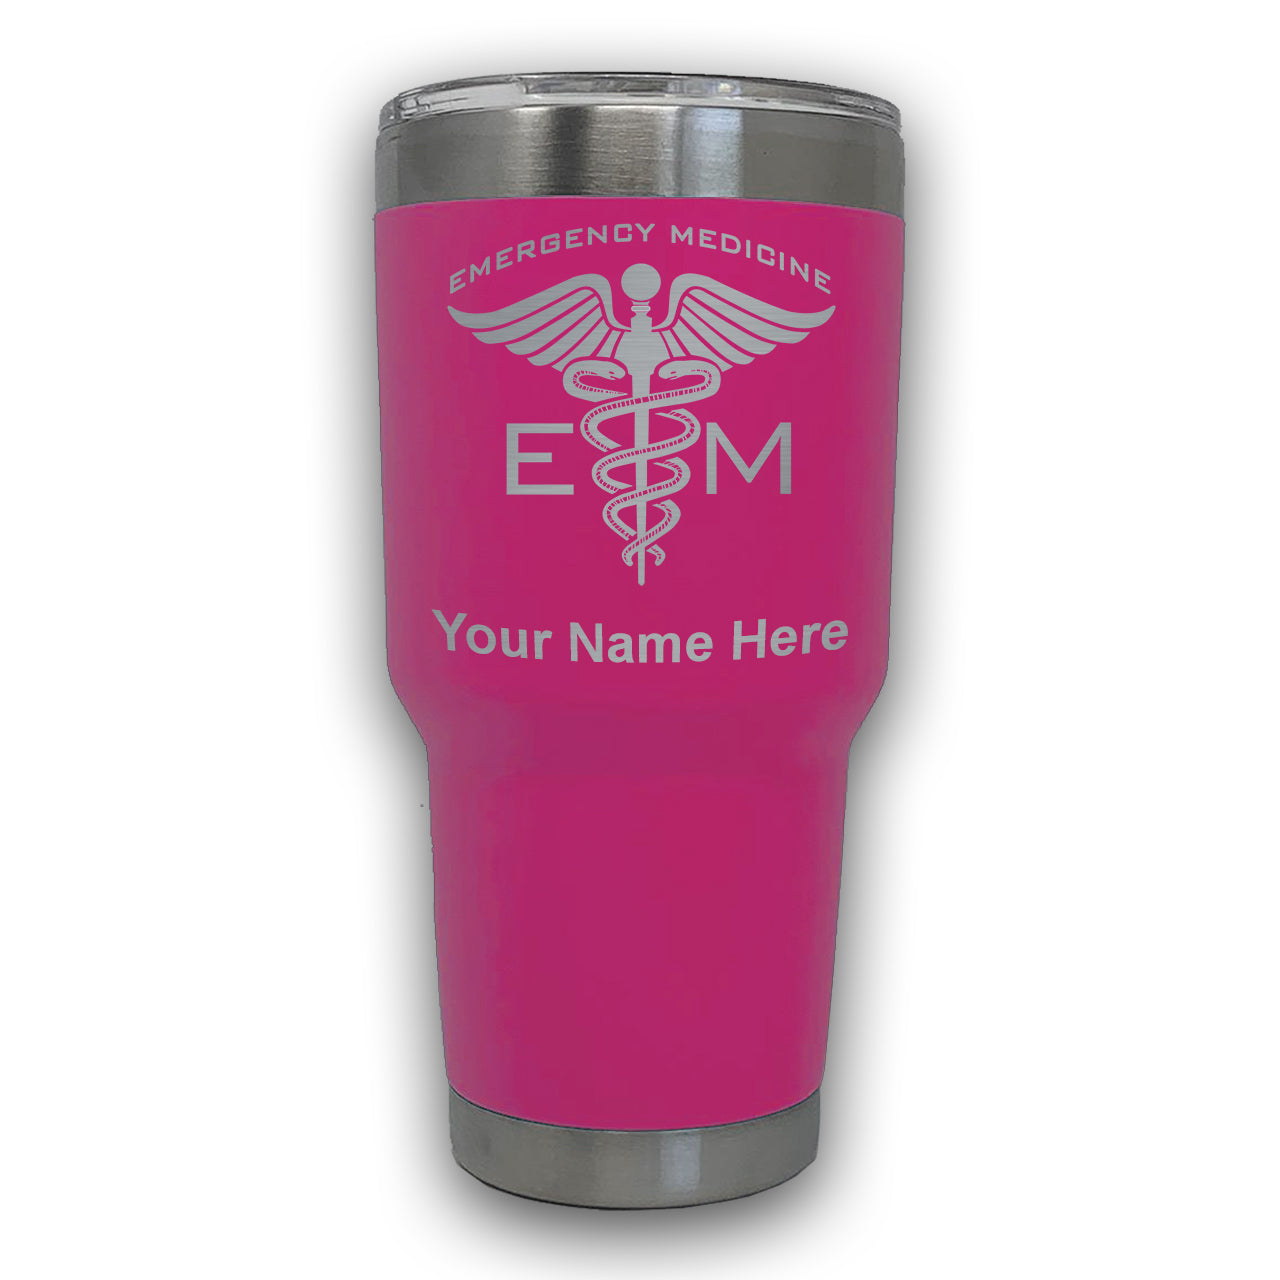 LaserGram 30oz Tumbler Mug, Emergency Medicine, Personalized Engraving Included